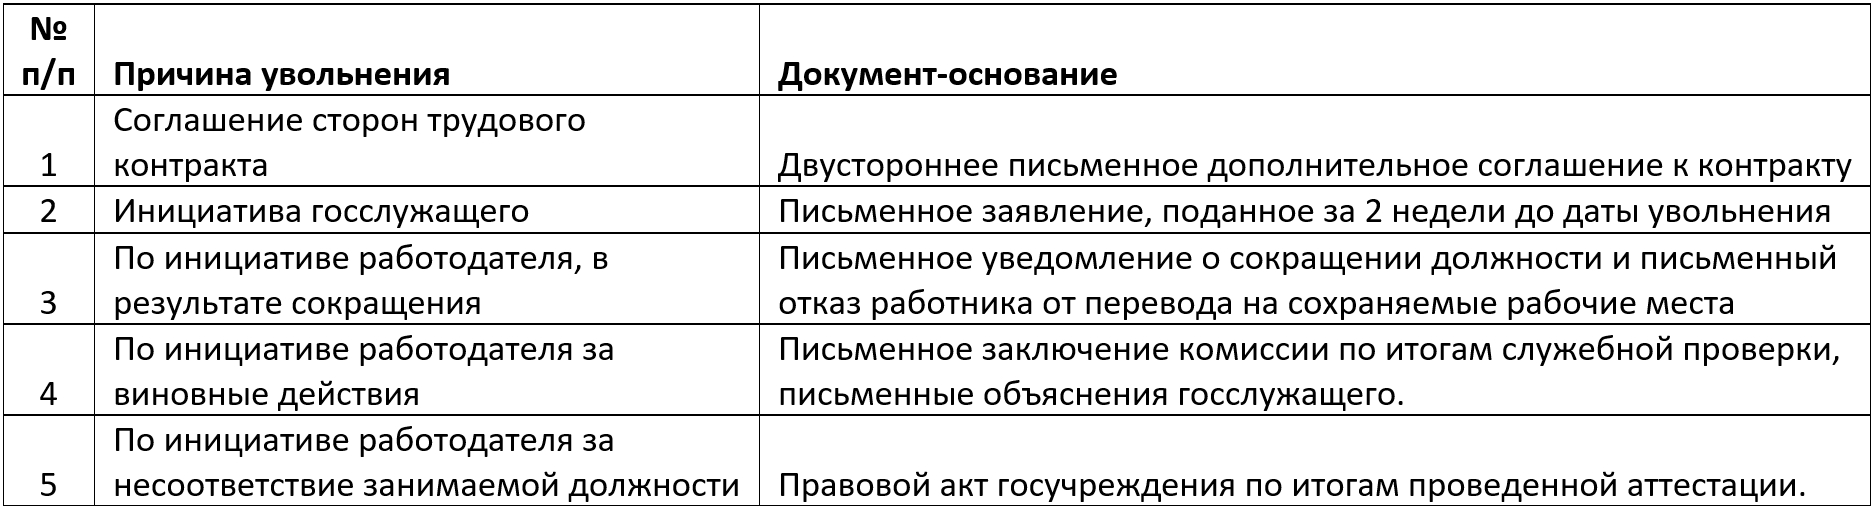 tablica dokumentov osnovanij dlya uvolneniya